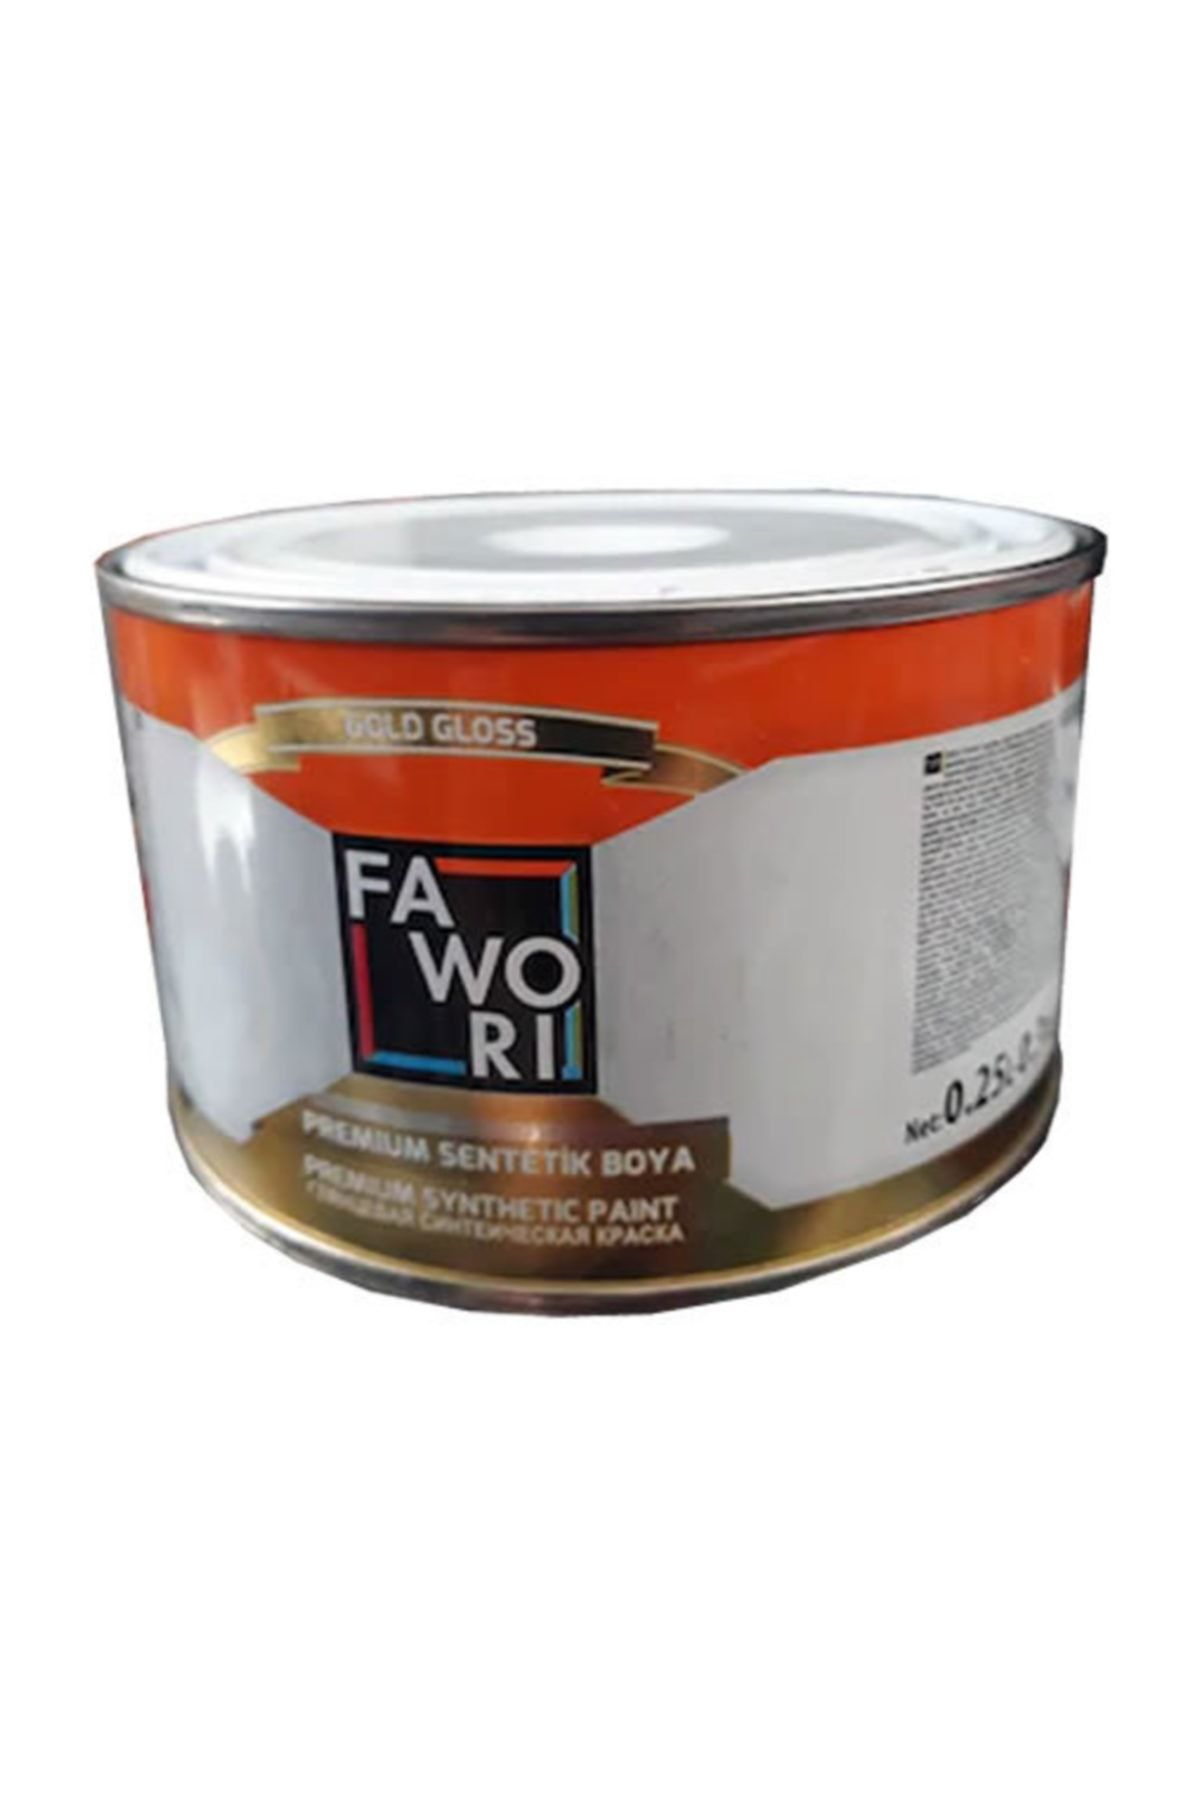 Fawori Premium Sentetik Yağlı Boya 0.25lt - Kirli Beyaz